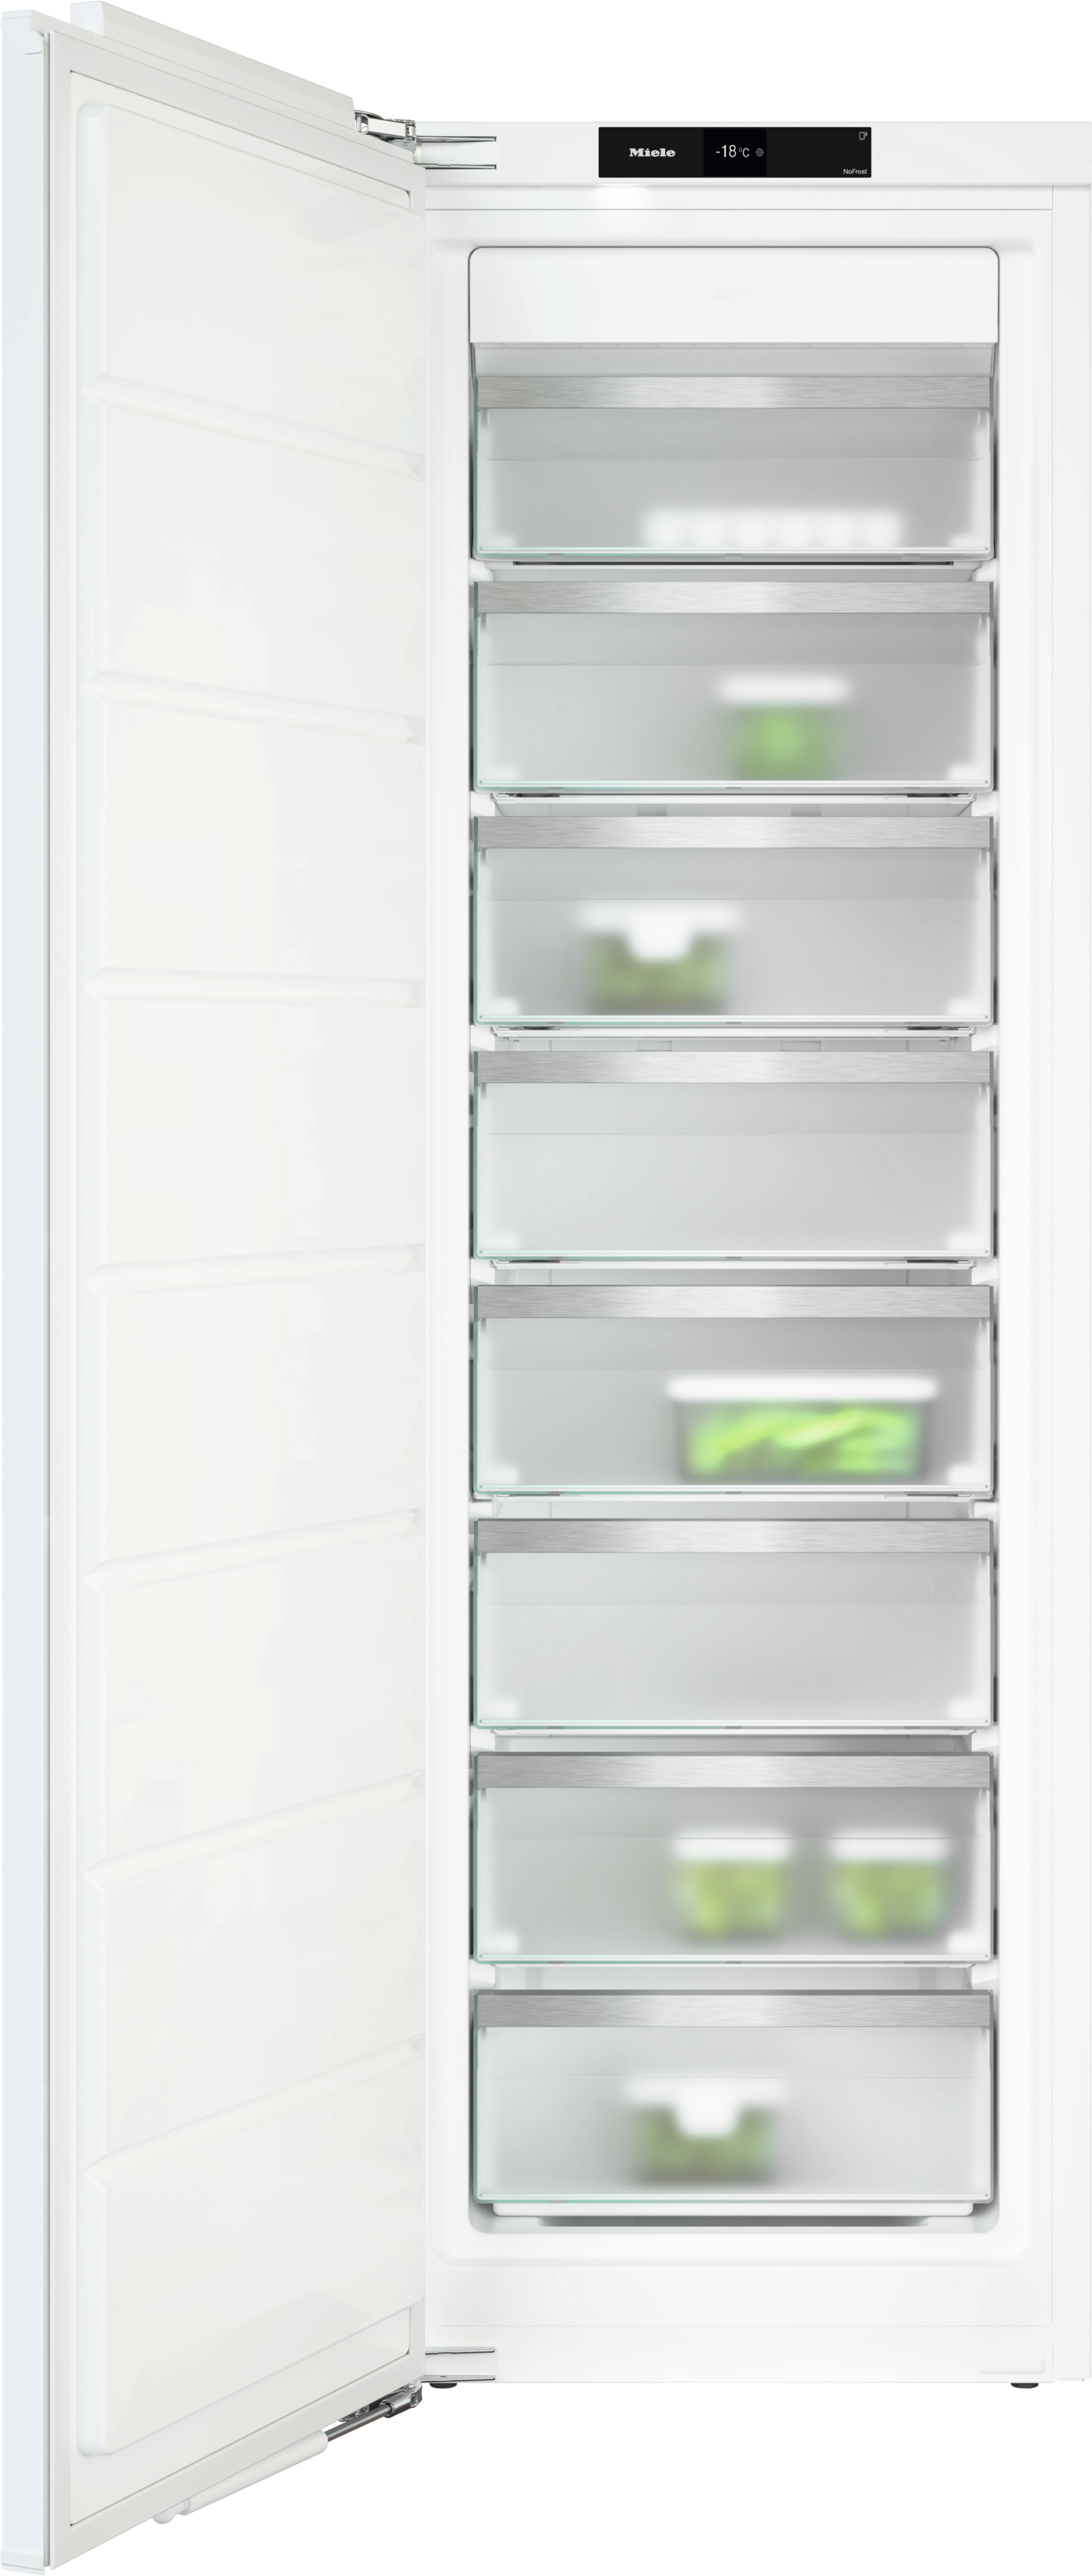 Refrigeration - FNS 7770 E - 1